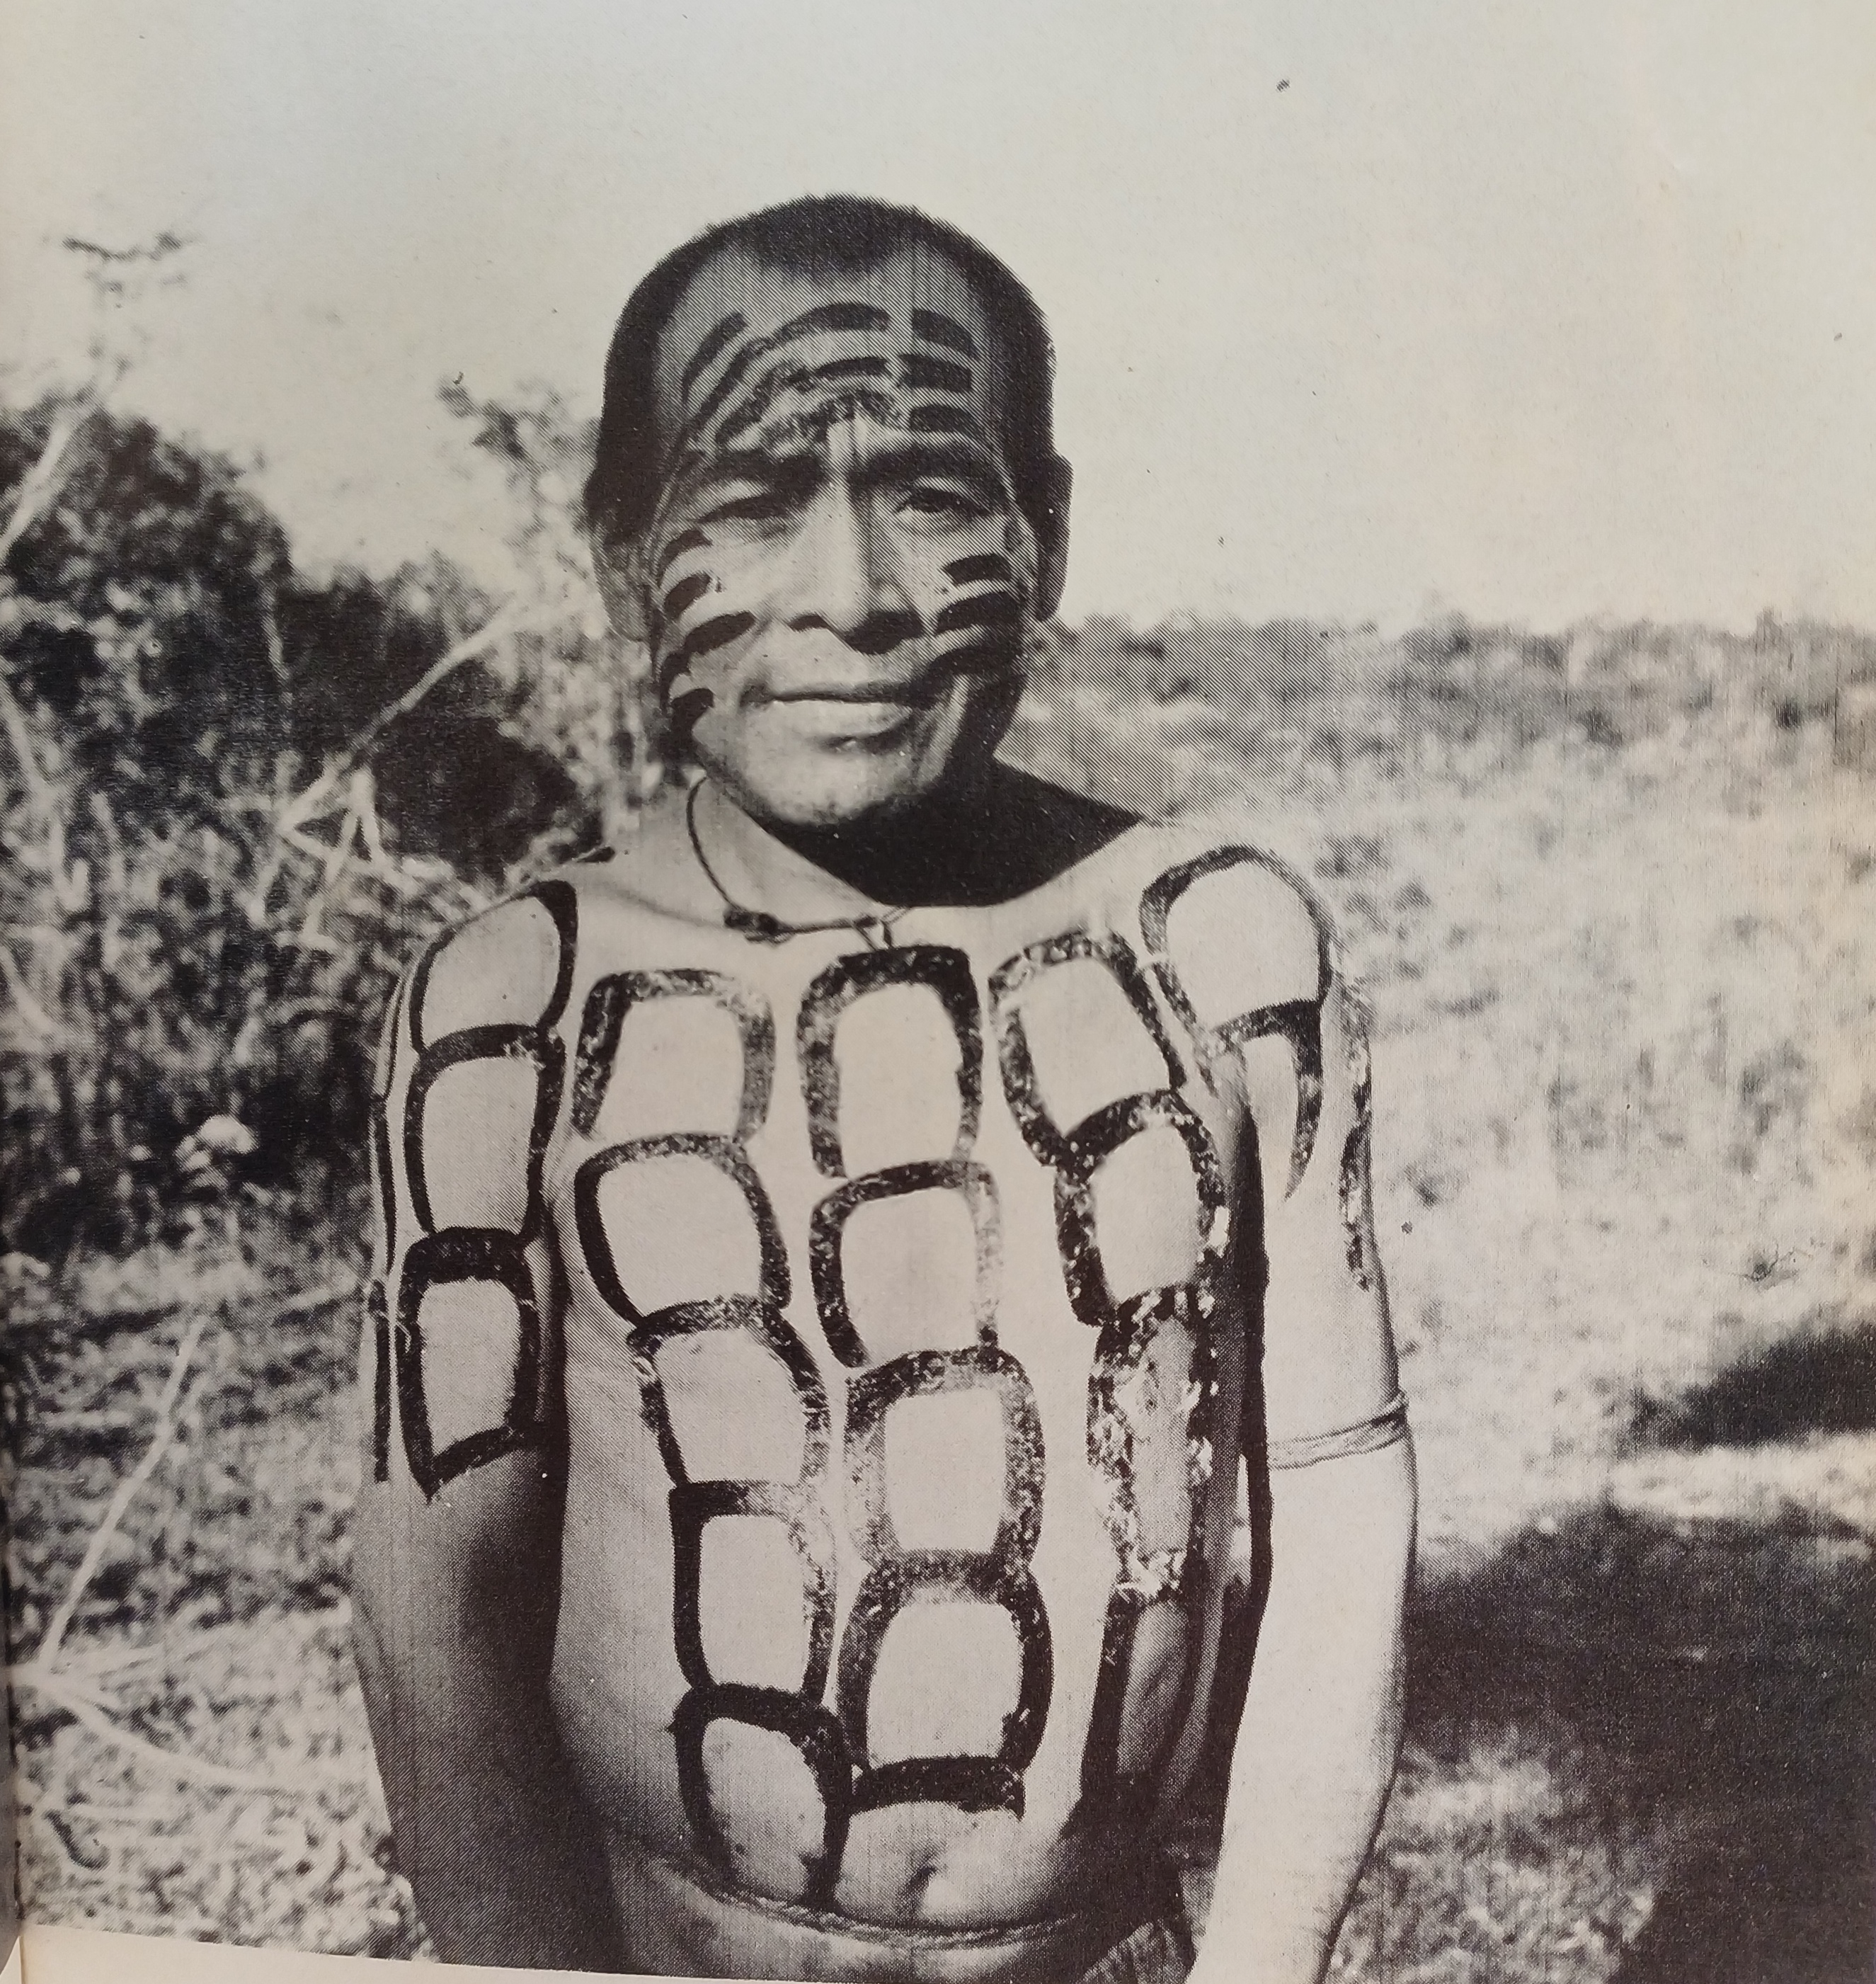 © Pierre Clastres, "Jyvukugi, le "chef" des Aché Gatu", Chronique des Indiens Guayaki. Ce que savent les Aché, chasseurs nomades du Paraguay. Paris: Plon, 1972. Terre Humaine.